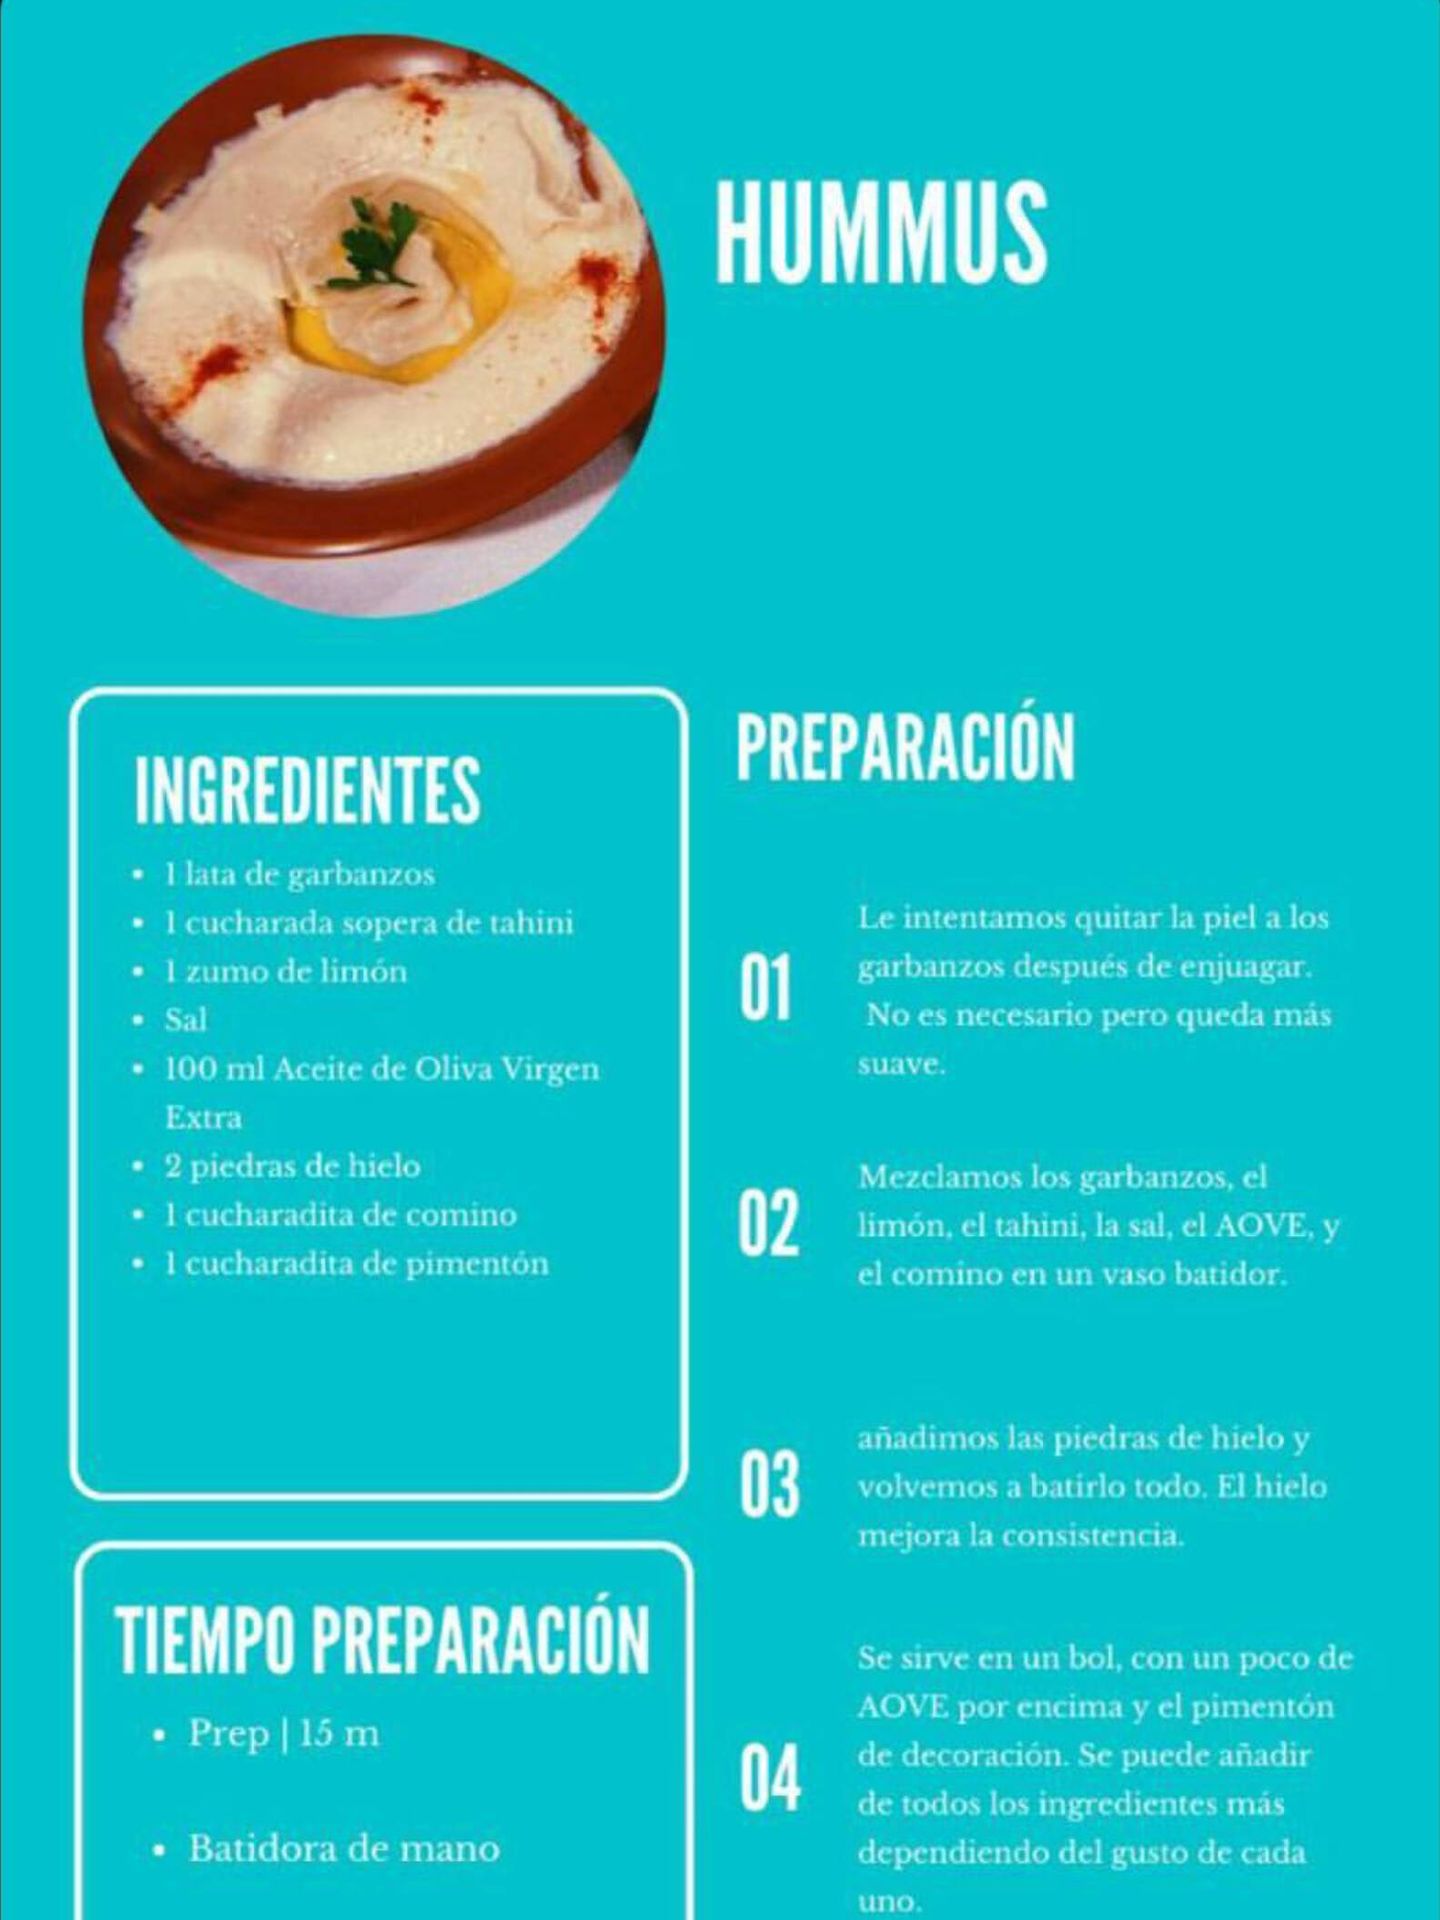 La receta del hummus de Vicky Martín Berrocal. (Instagram/@vickymartinberrocal)